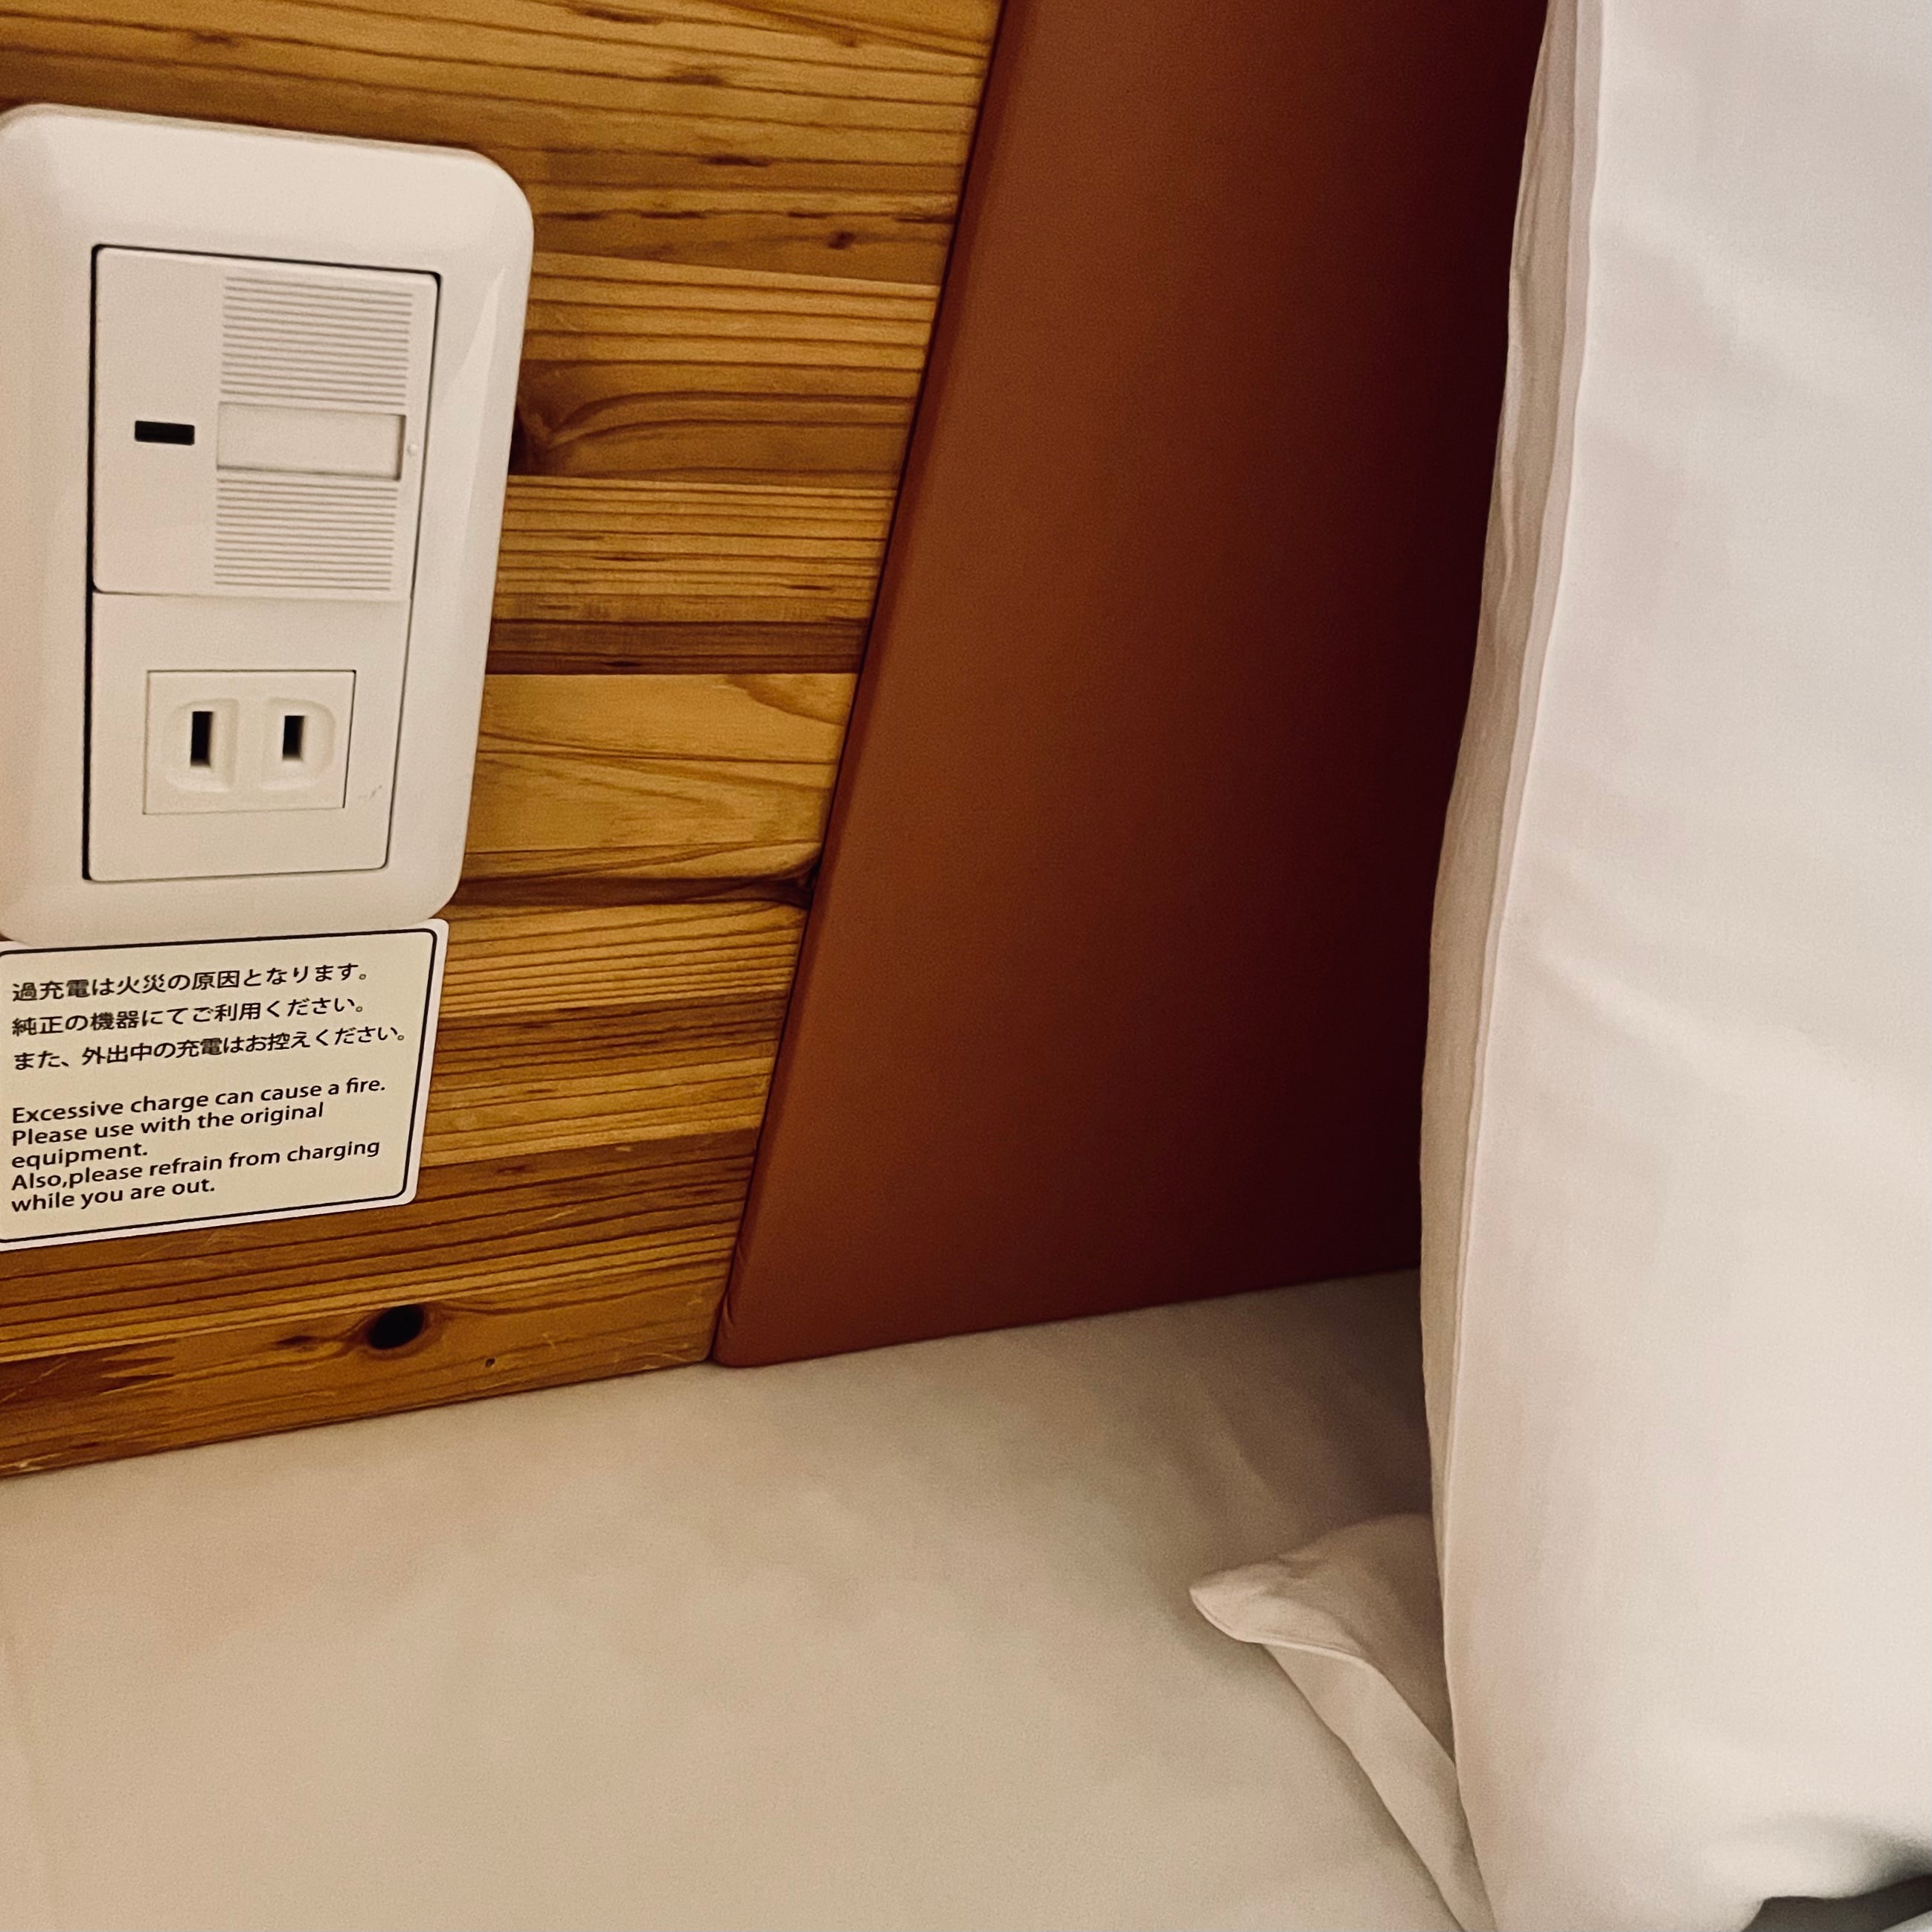 Bedside outlet for safe charging